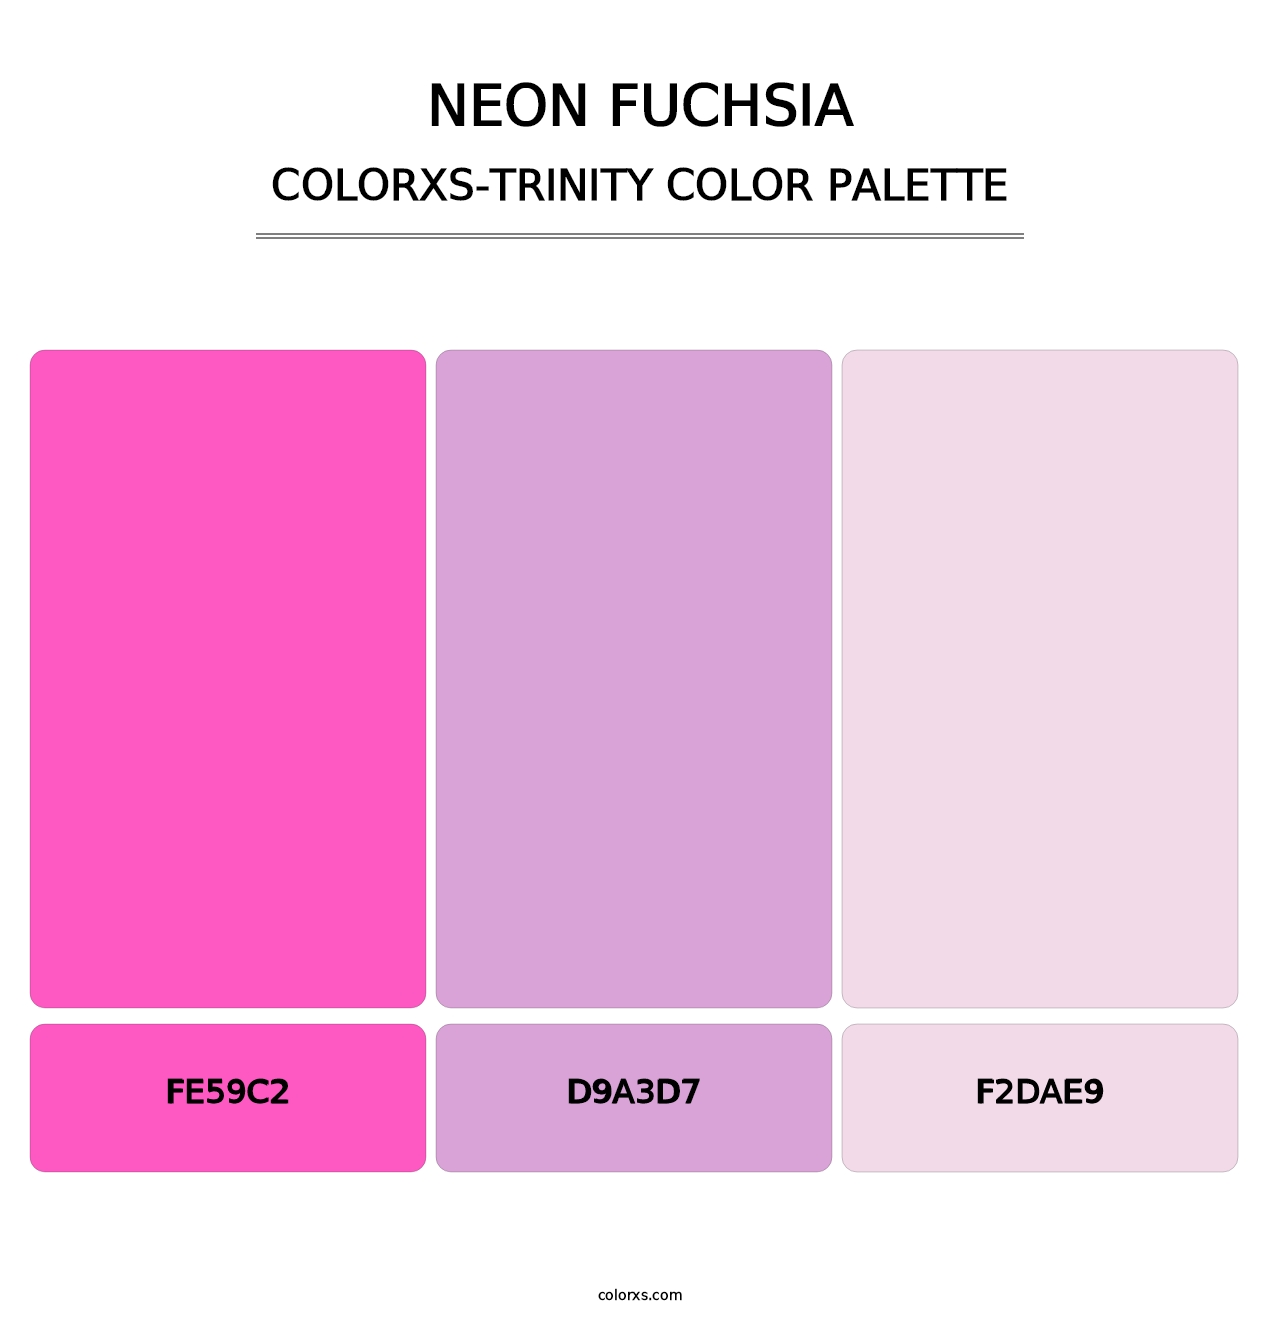 Neon Fuchsia - Colorxs Trinity Palette